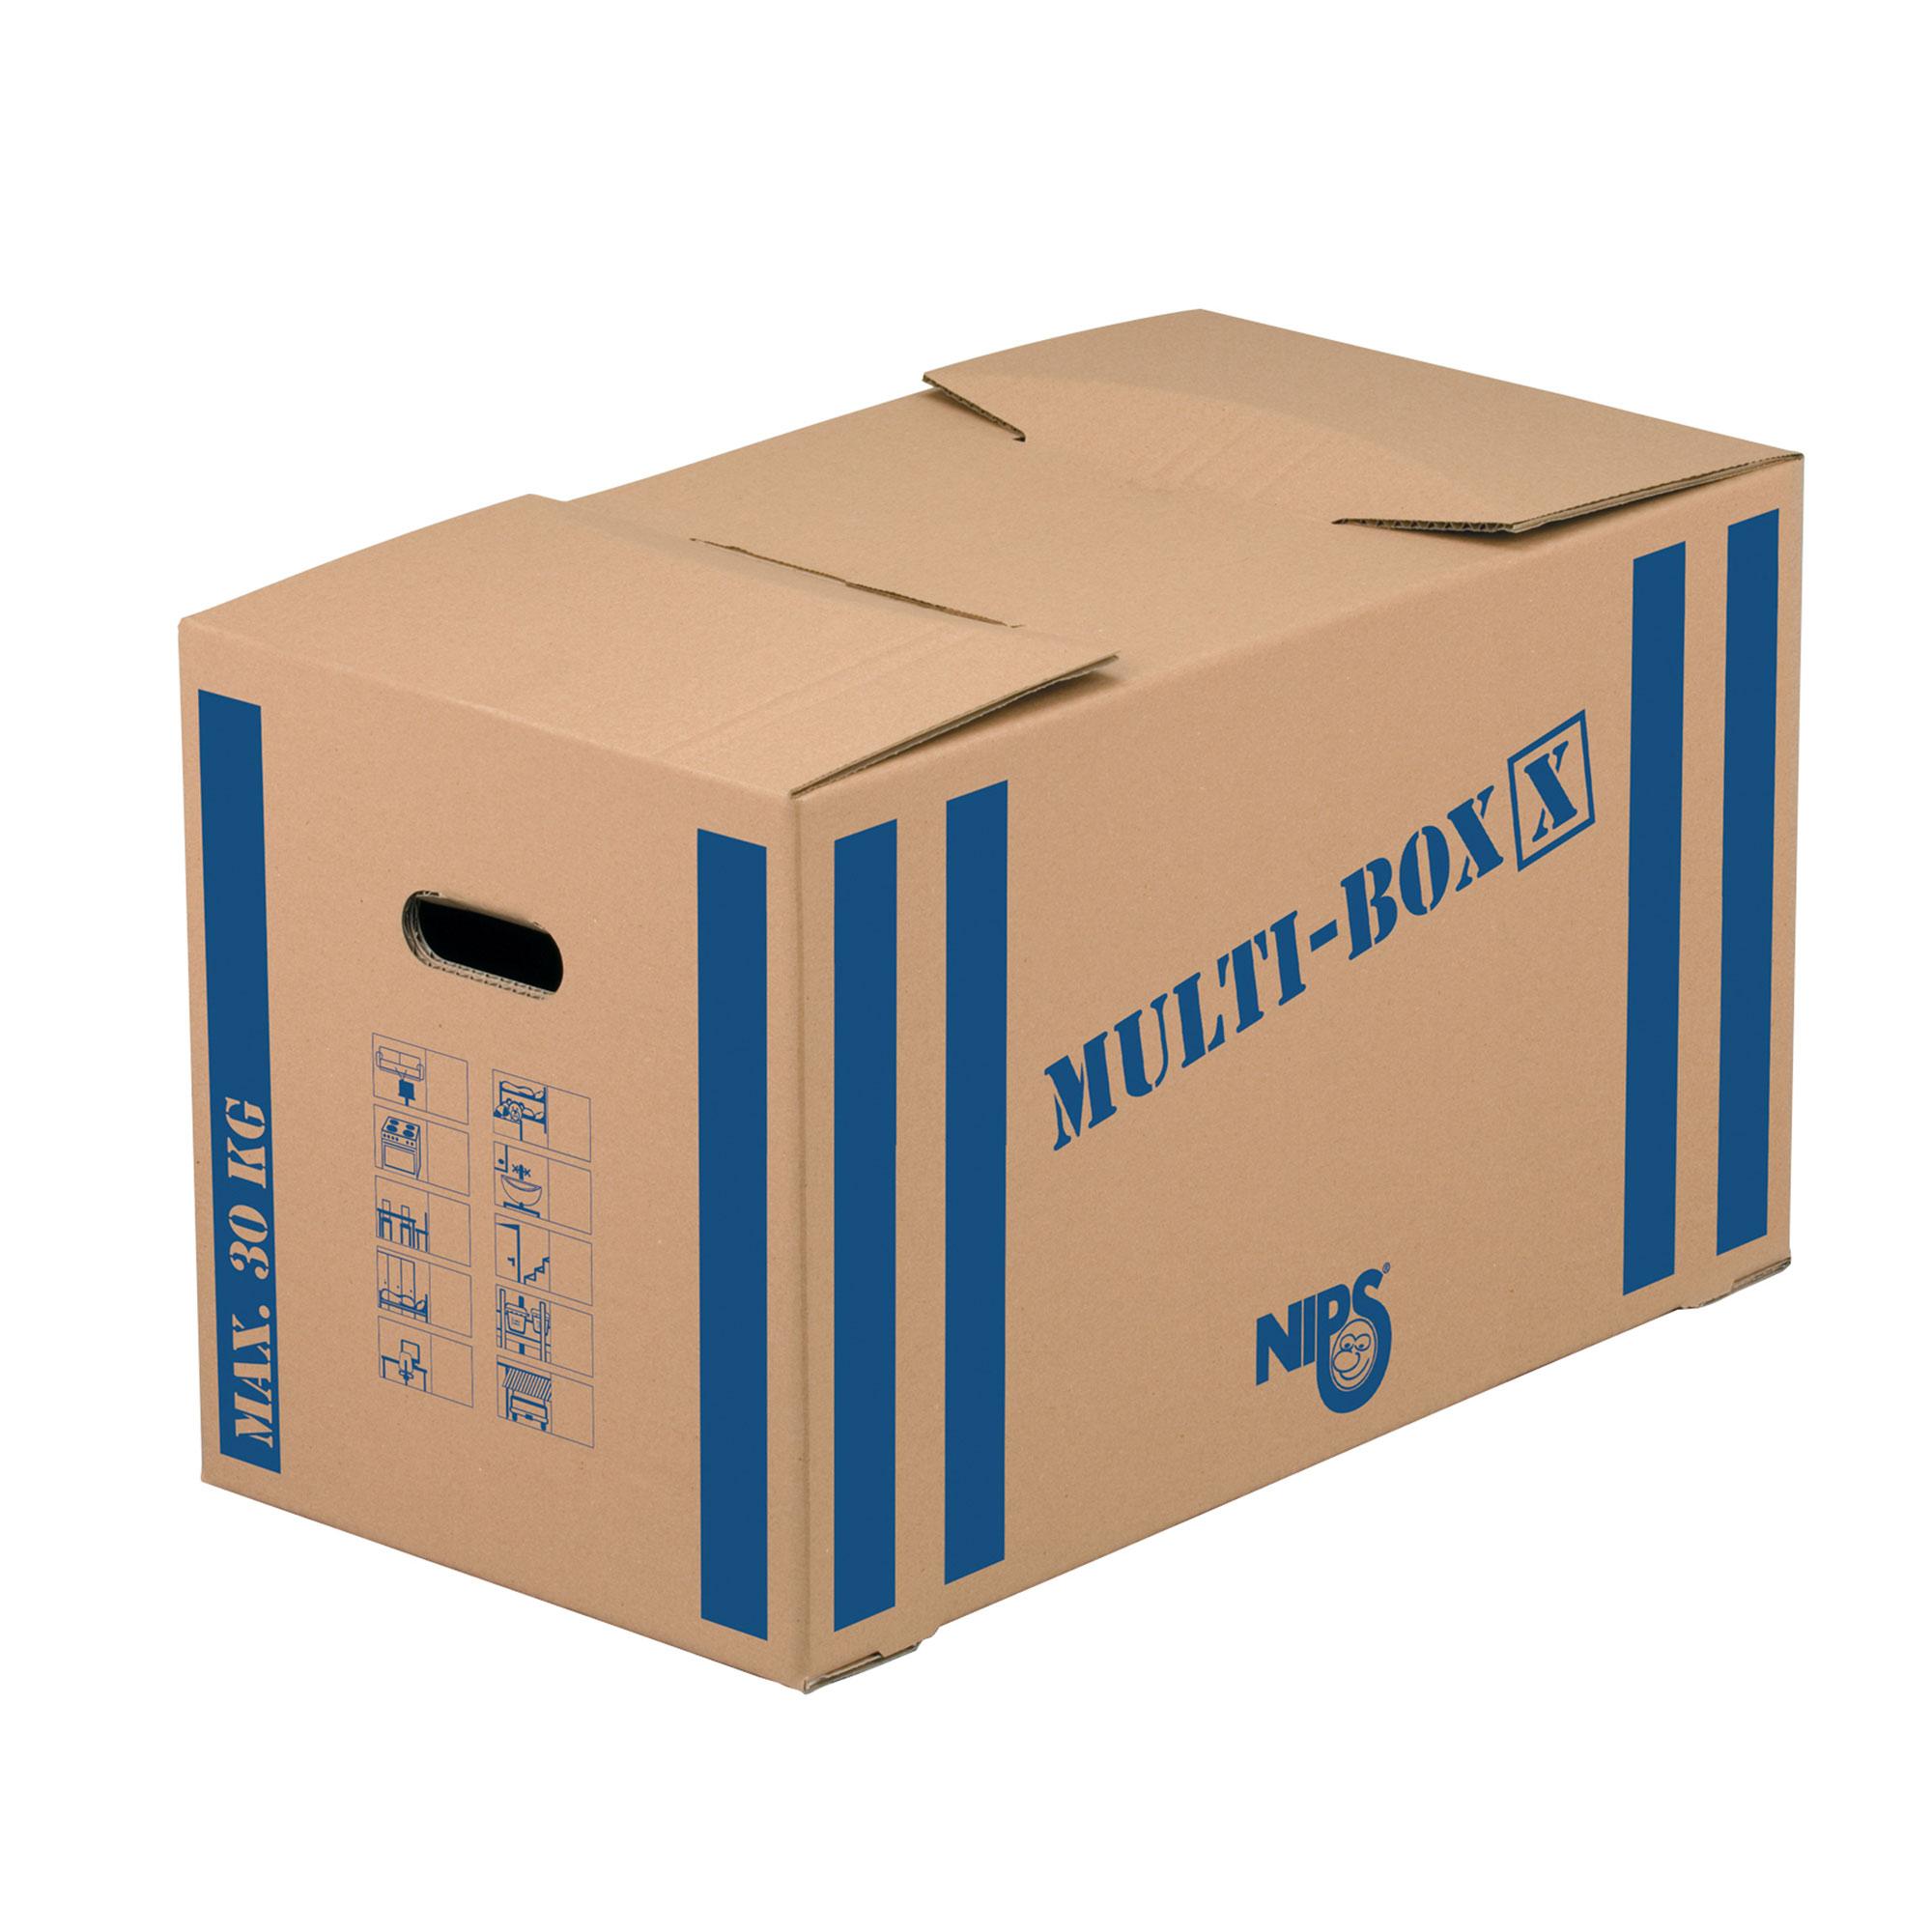 Multi-Storage Moving Box Extra Large - Single